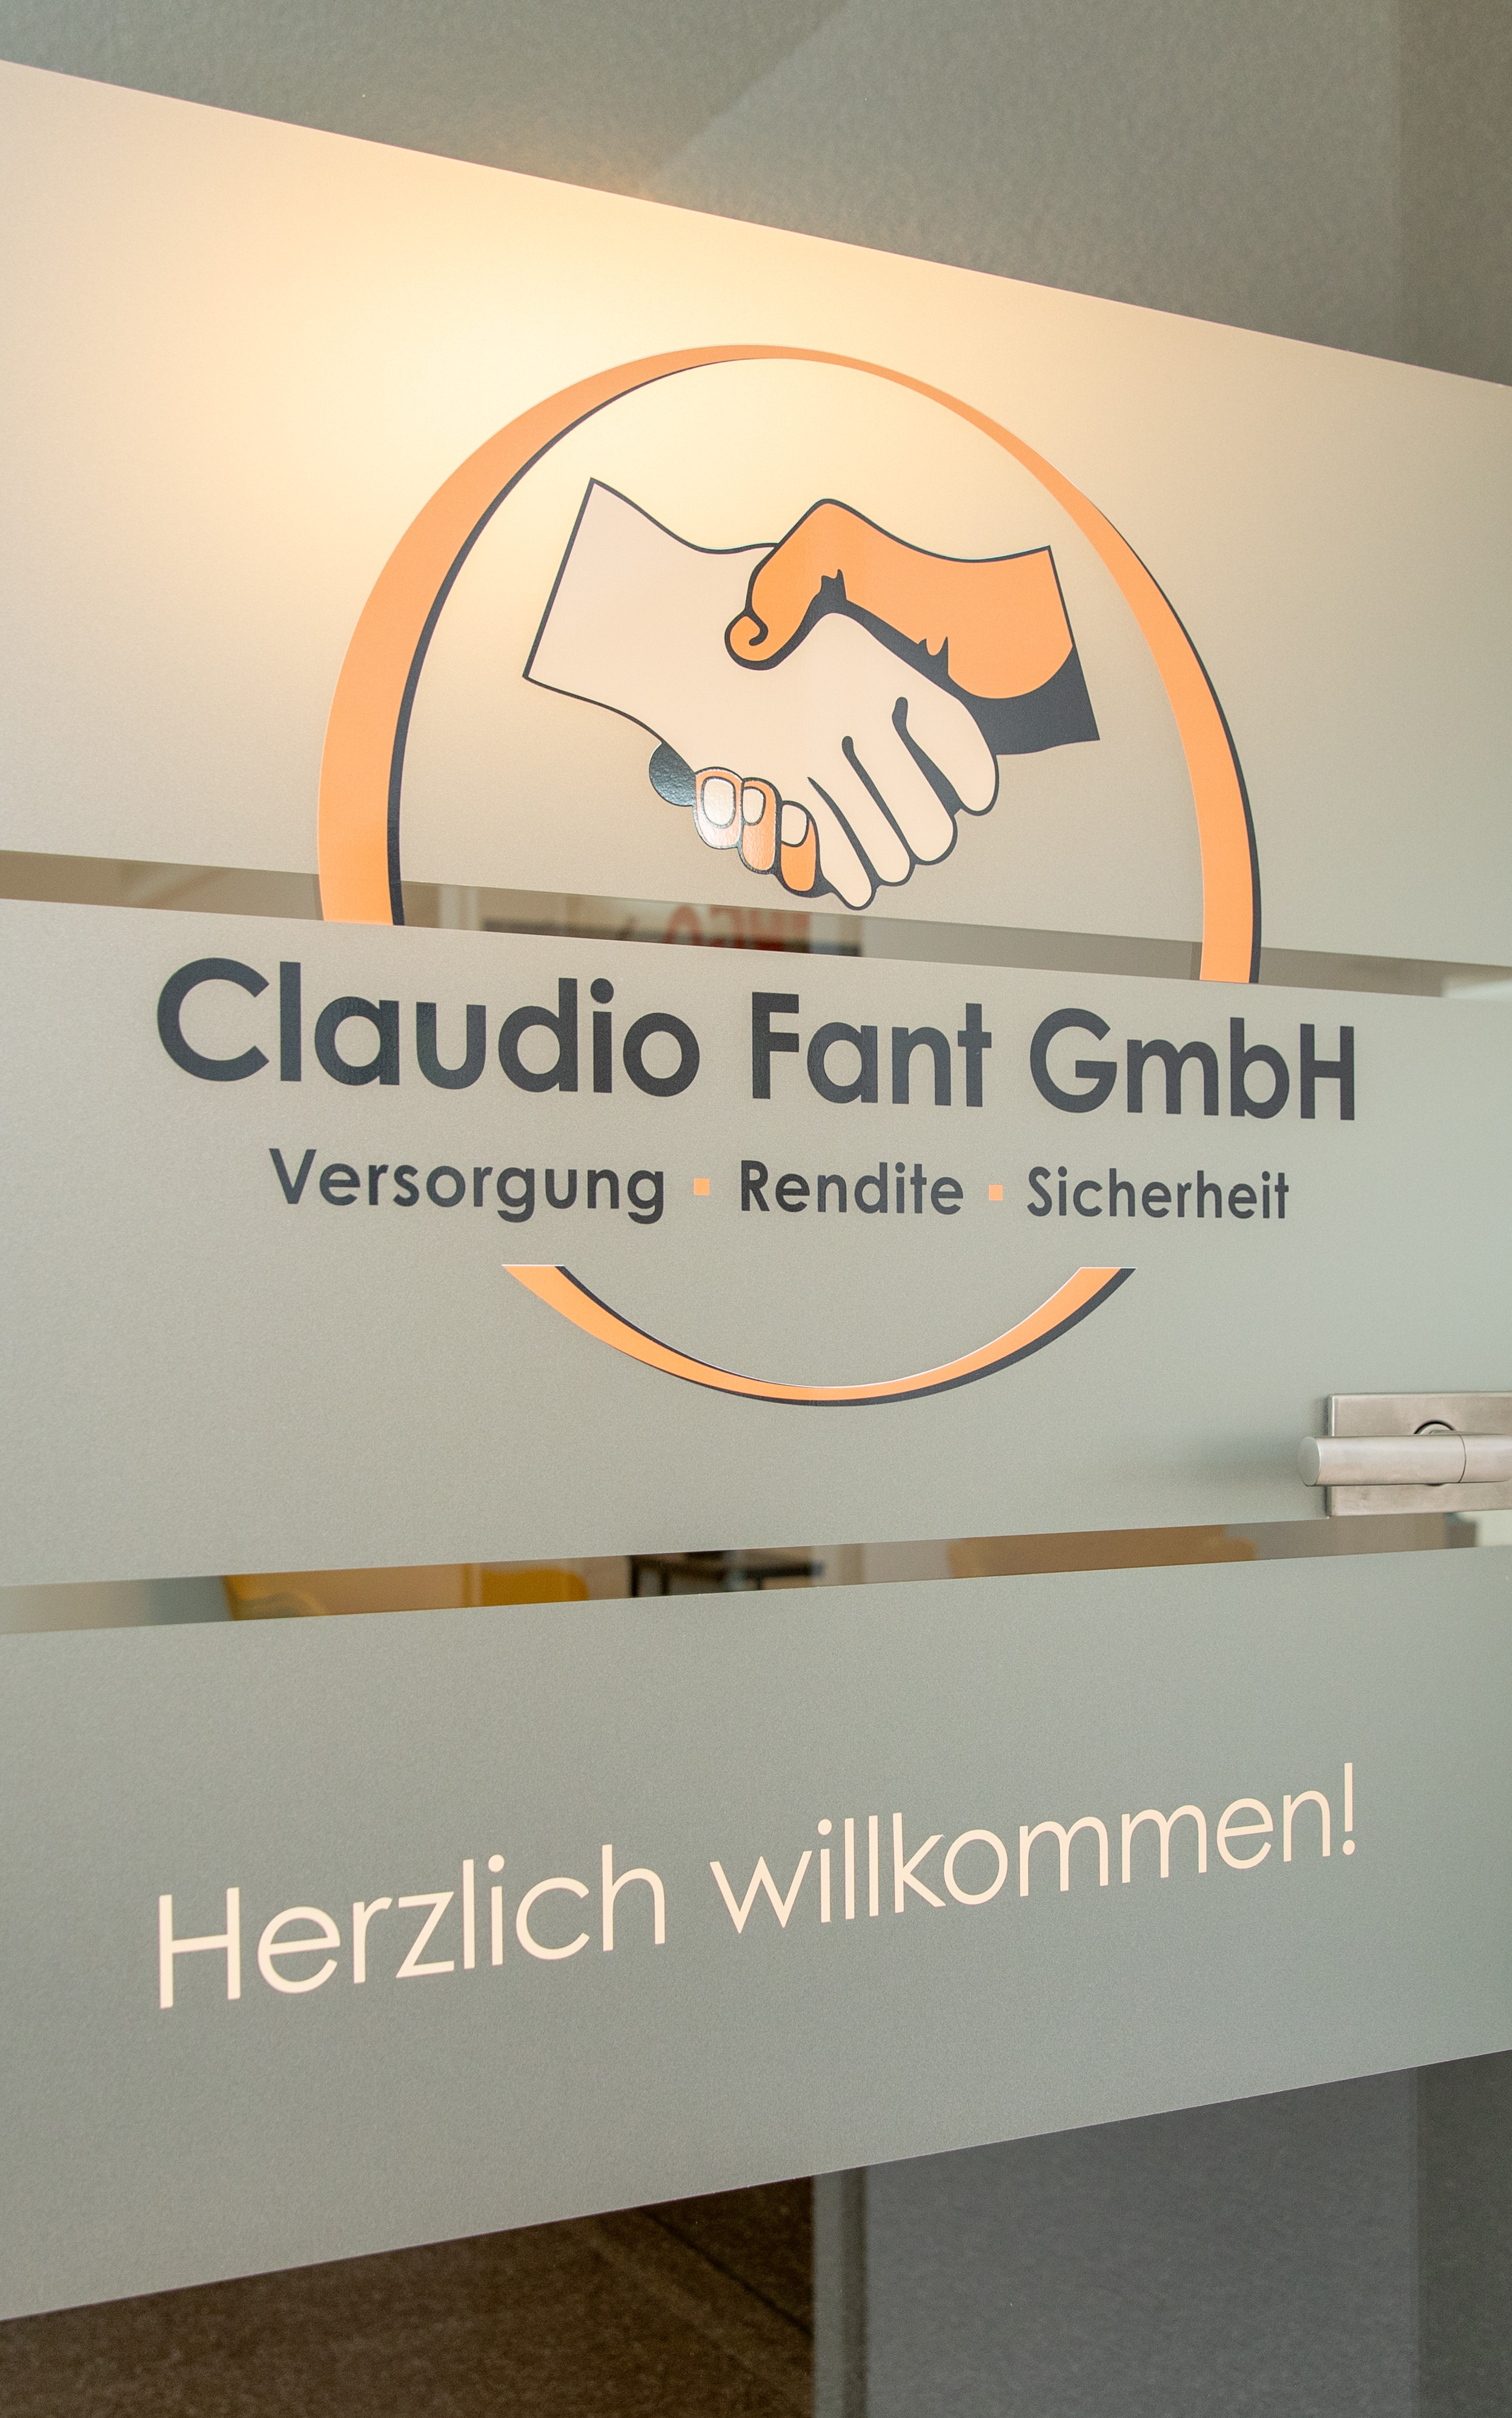 Claudio Fant GmbH in Bad Säckingen an der Werderstrasse 1